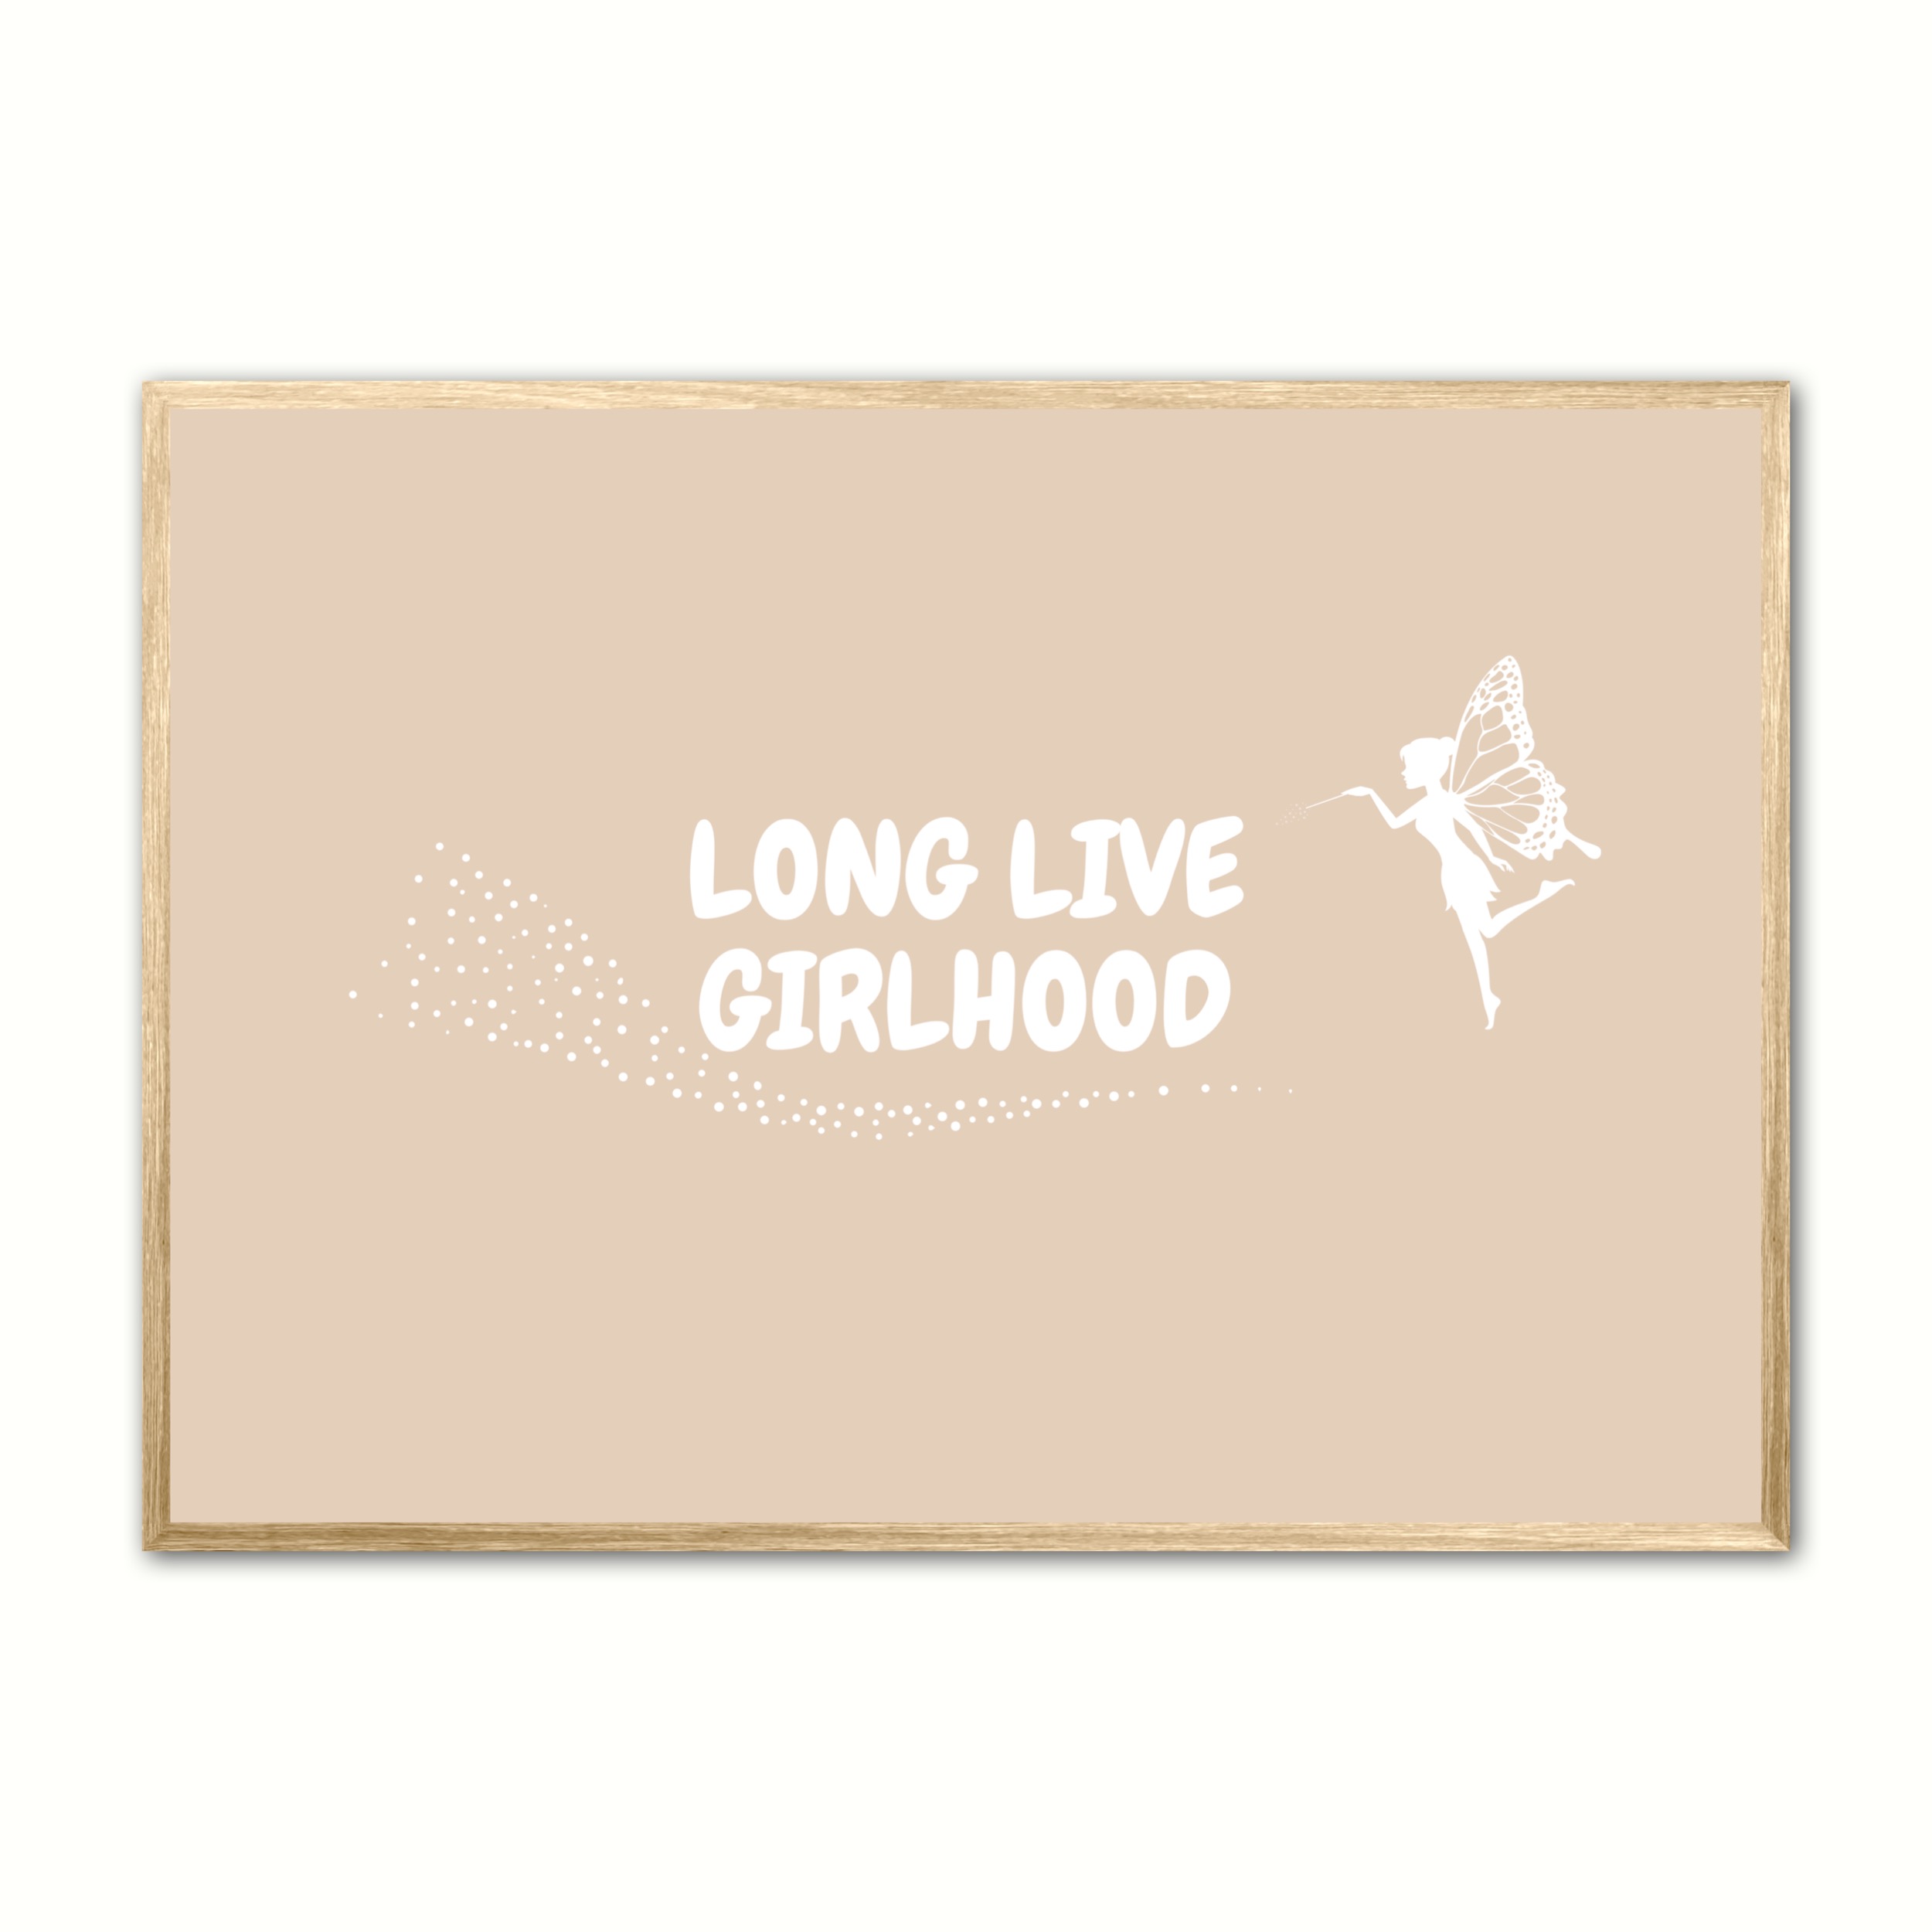 Se Plakat med Long Live Girlhood - Sand 21 x 29,7 cm (A4) hos Nyplakat.dk